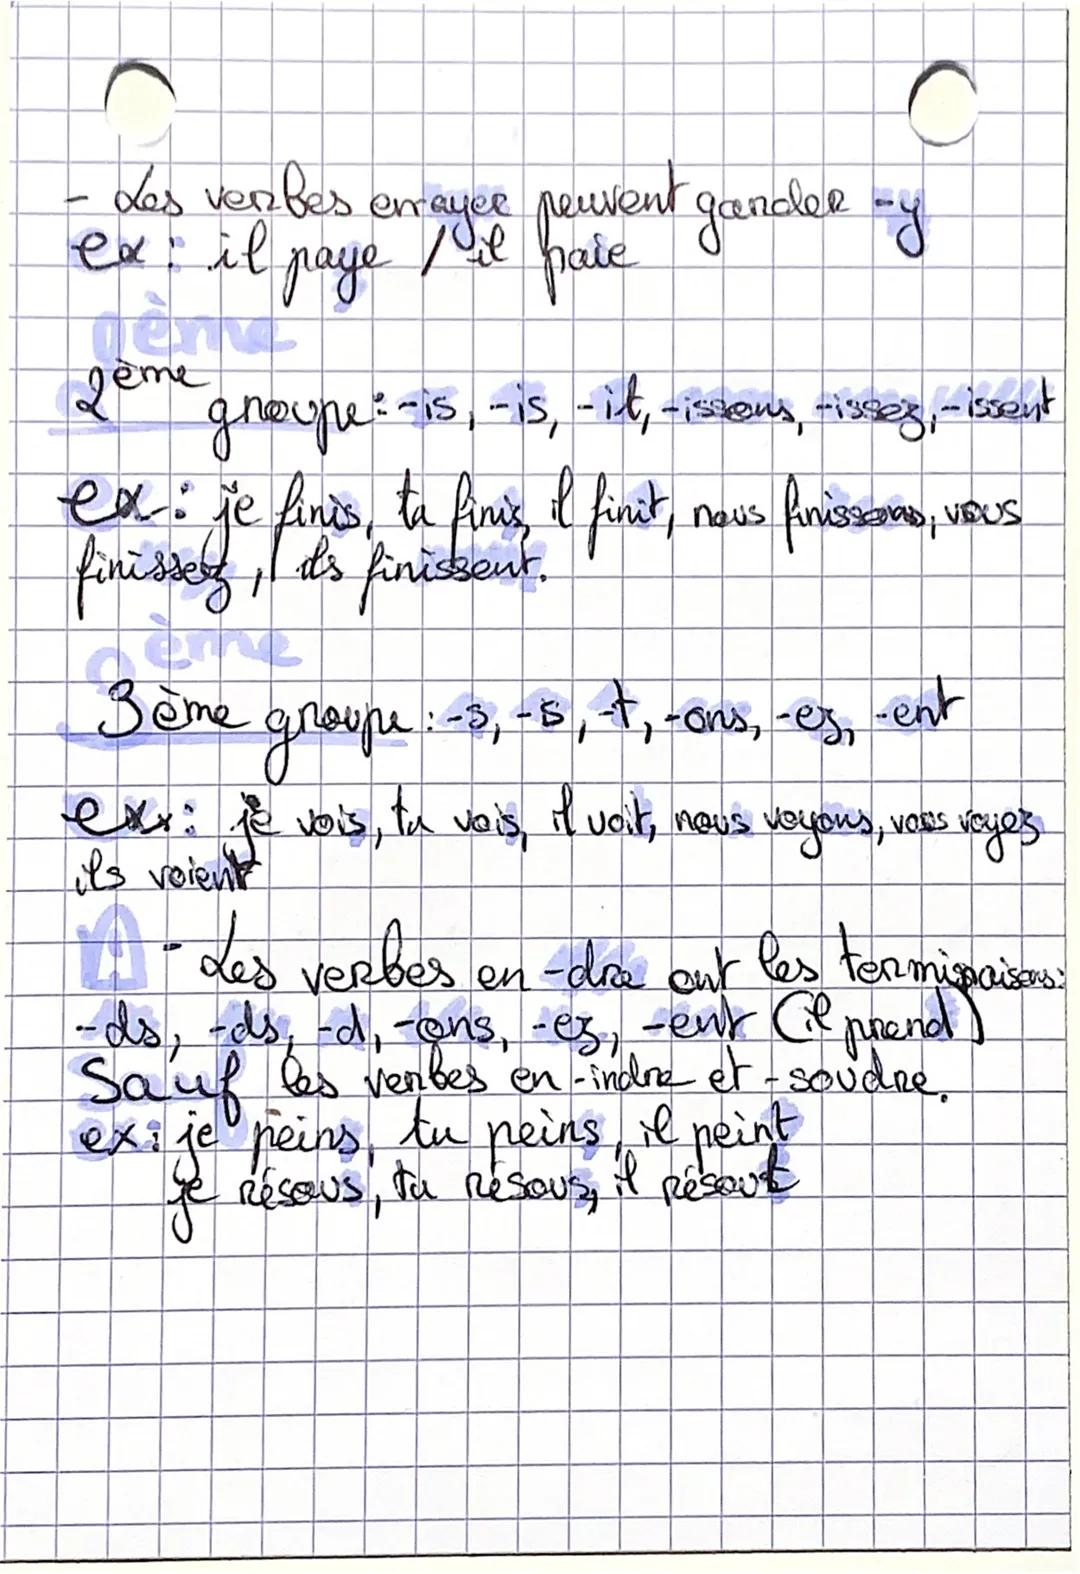 • français
Le présent de l'indicatif:
conjugaison et valeurs
8
A Rappel
лего
Jen noupe: Verbes
zony naupu:
однейре
07/10/2014
en -CR
Vorbes 